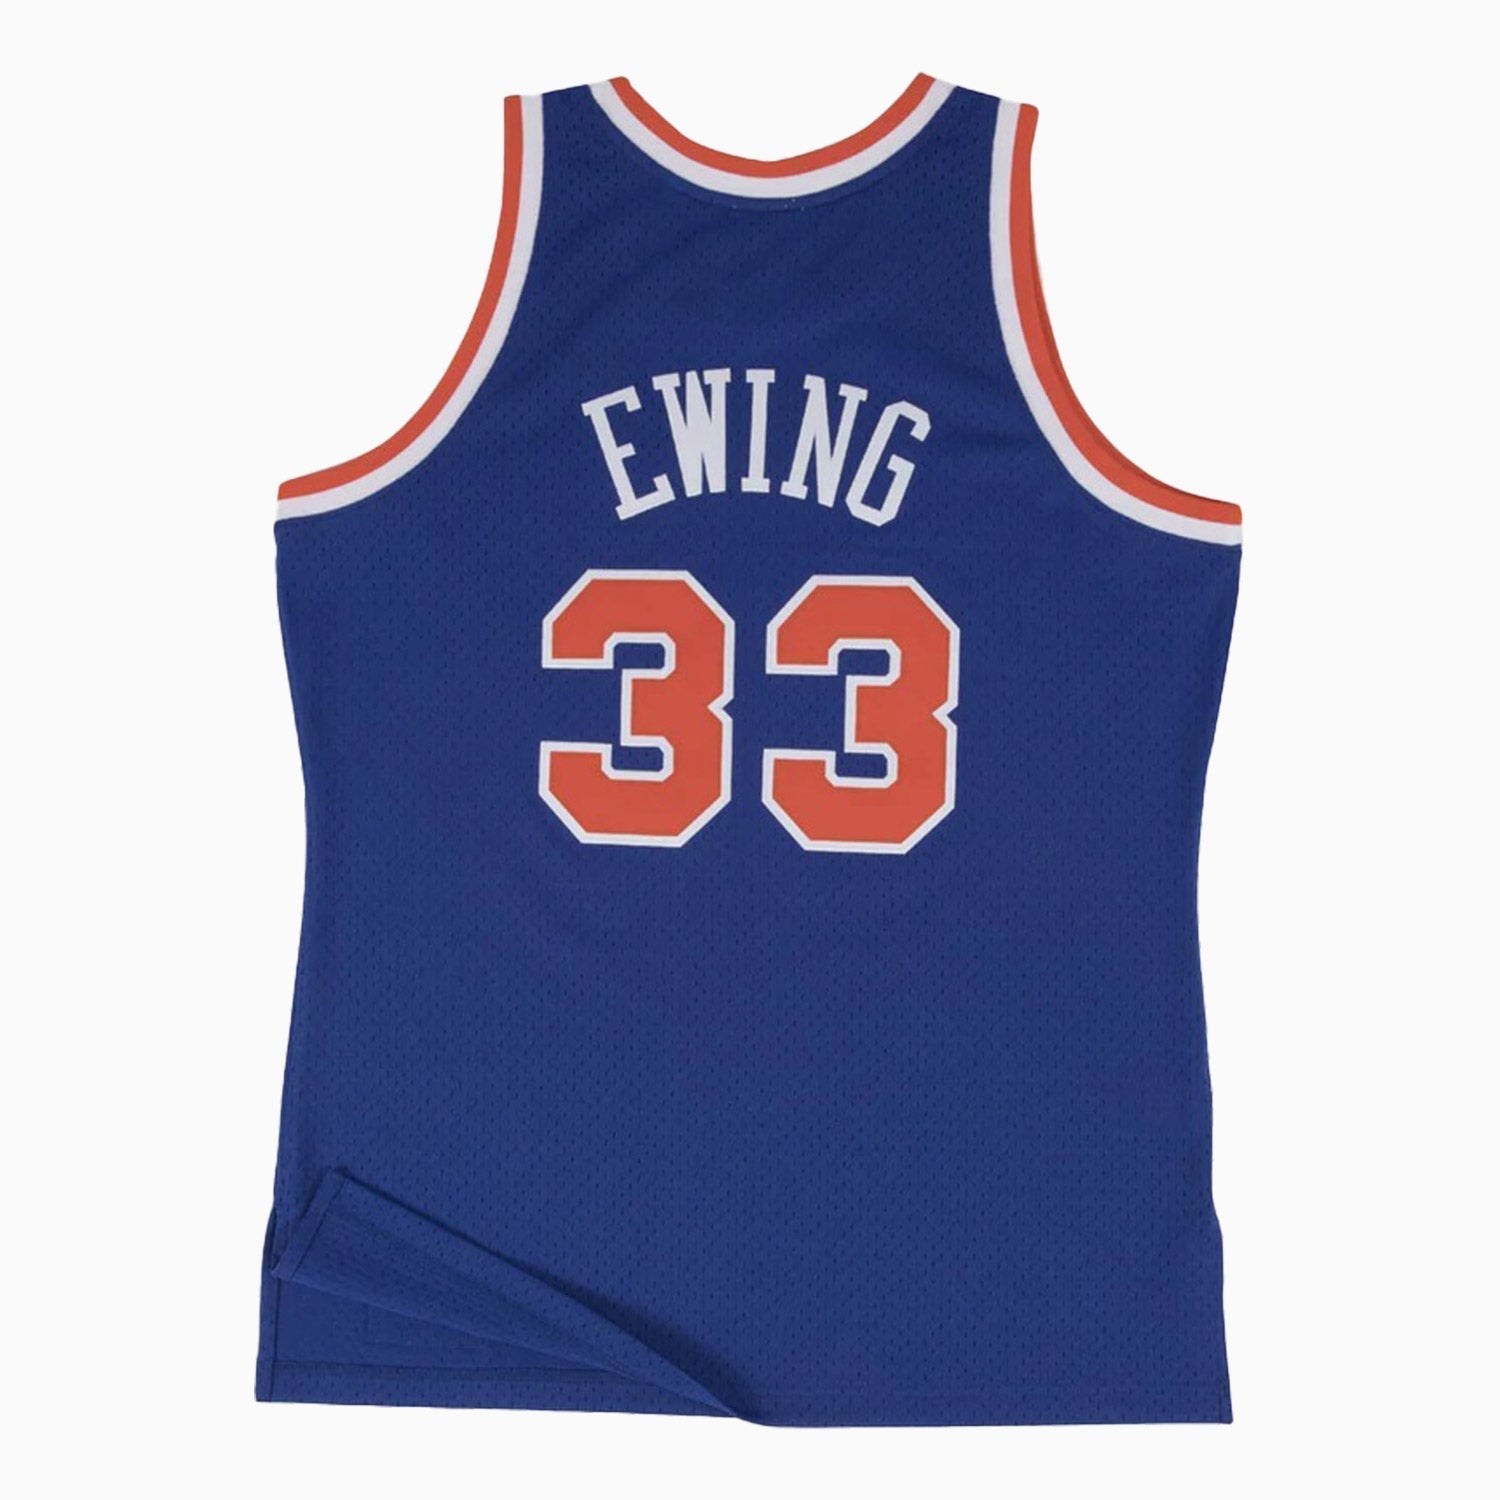 Mitchell & Ness New York Knicks Road 1991-92 Patrick Ewing Swingman Jersey Royal